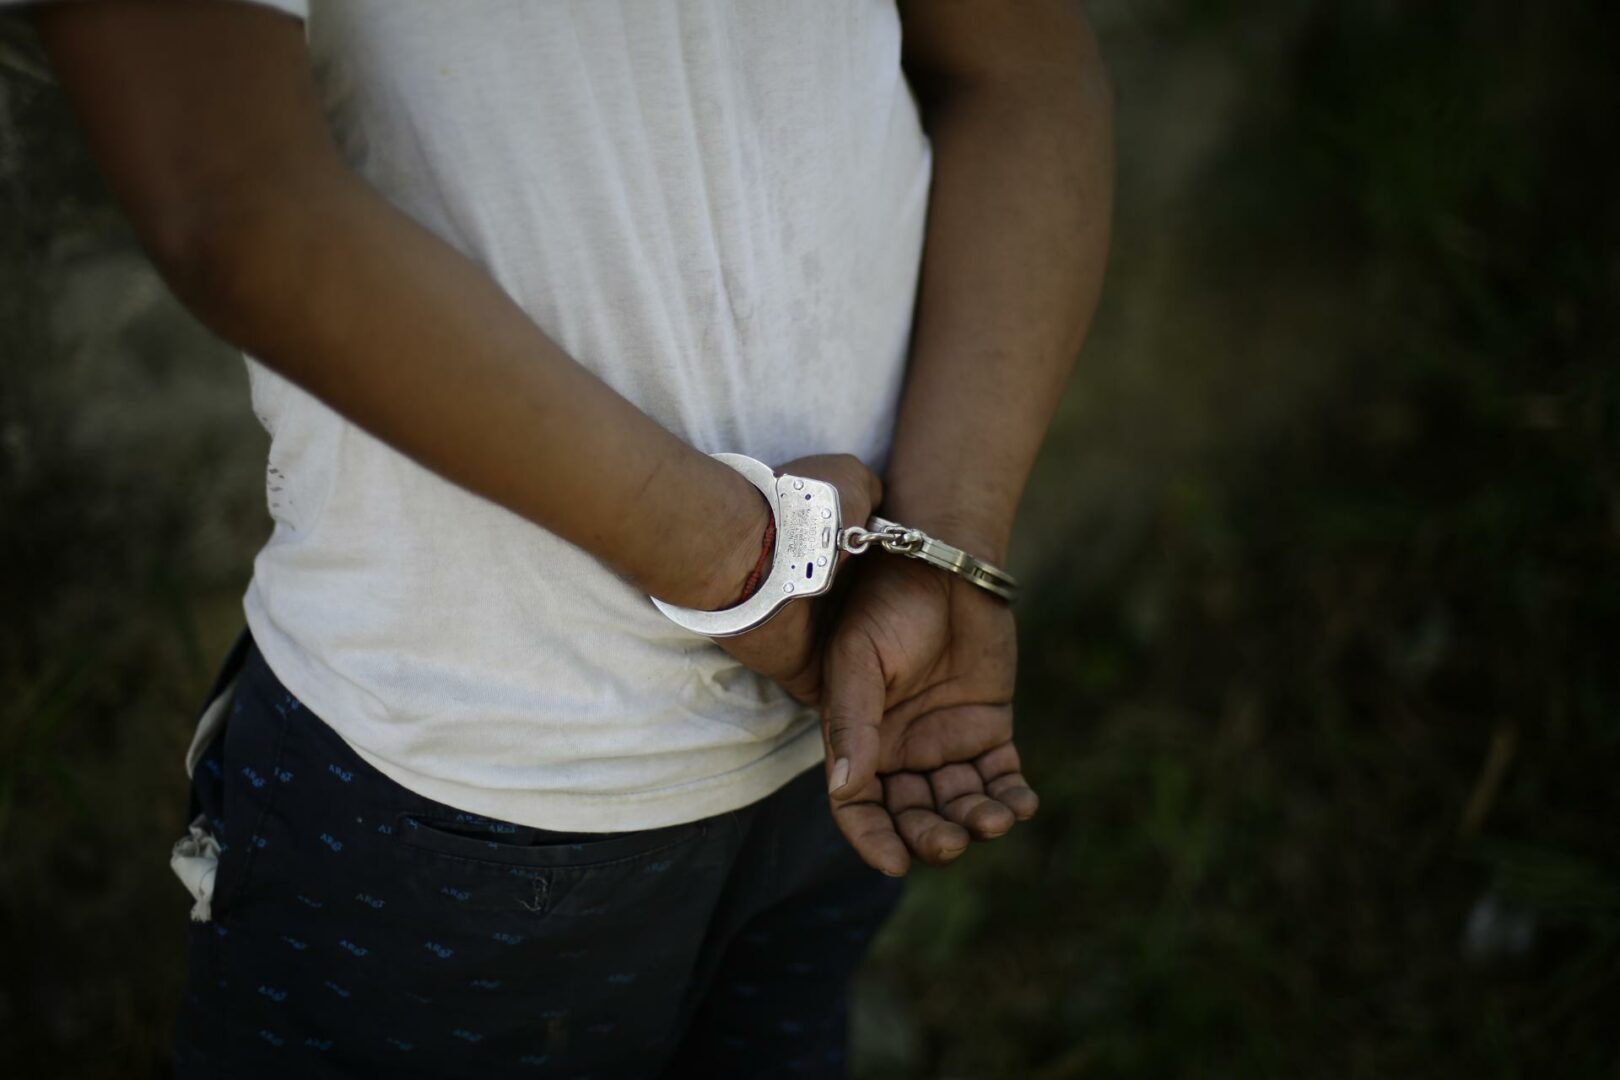 Arrestan en México a sujeto ligado a laboratorio de fentanilo en guardería de Nueva York